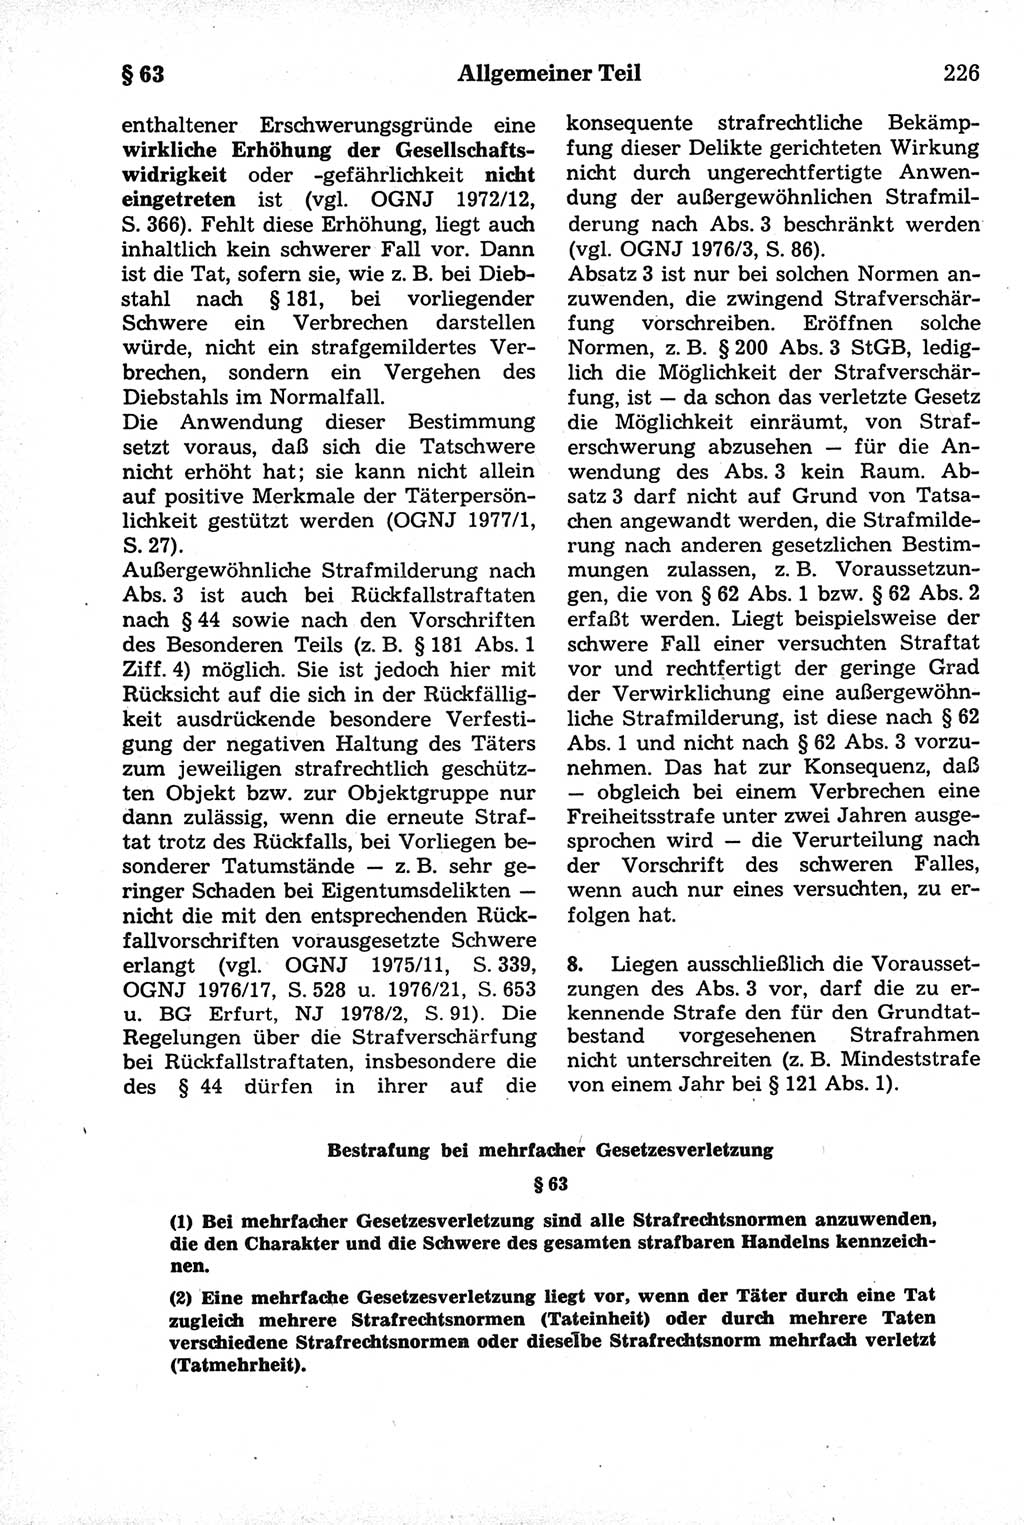 Strafrecht der Deutschen Demokratischen Republik (DDR), Kommentar zum Strafgesetzbuch (StGB) 1981, Seite 226 (Strafr. DDR Komm. StGB 1981, S. 226)